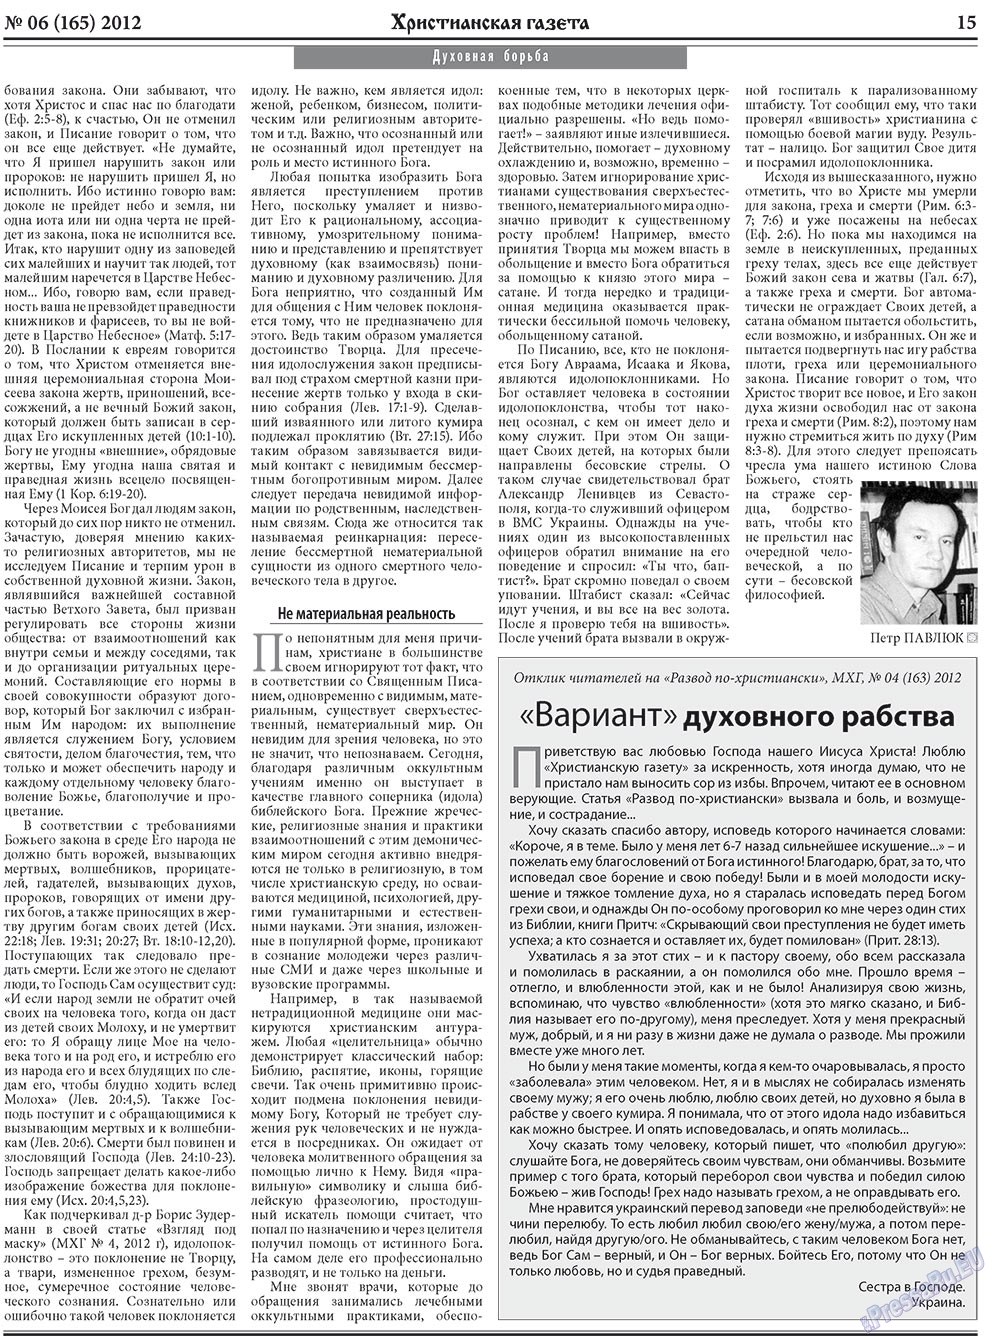 Христианская газета, газета. 2012 №6 стр.23